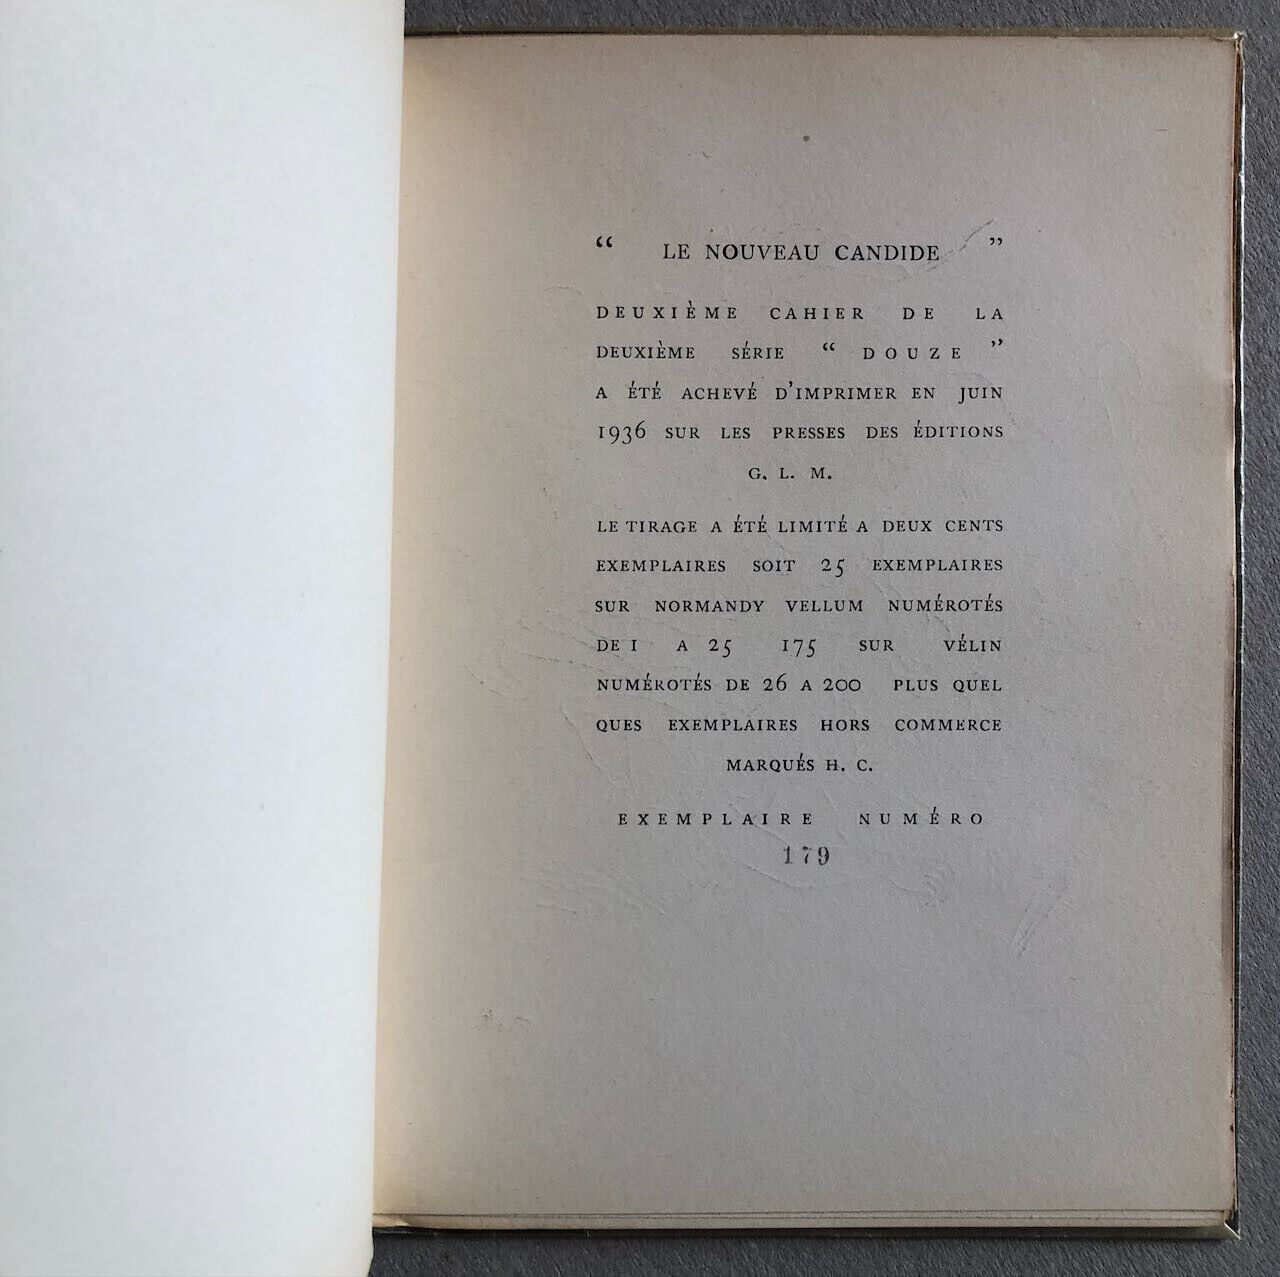 Valentine Penrose — Le nouveau Candide — Front. Paalen — éo n°/200 — GLM — 1936.